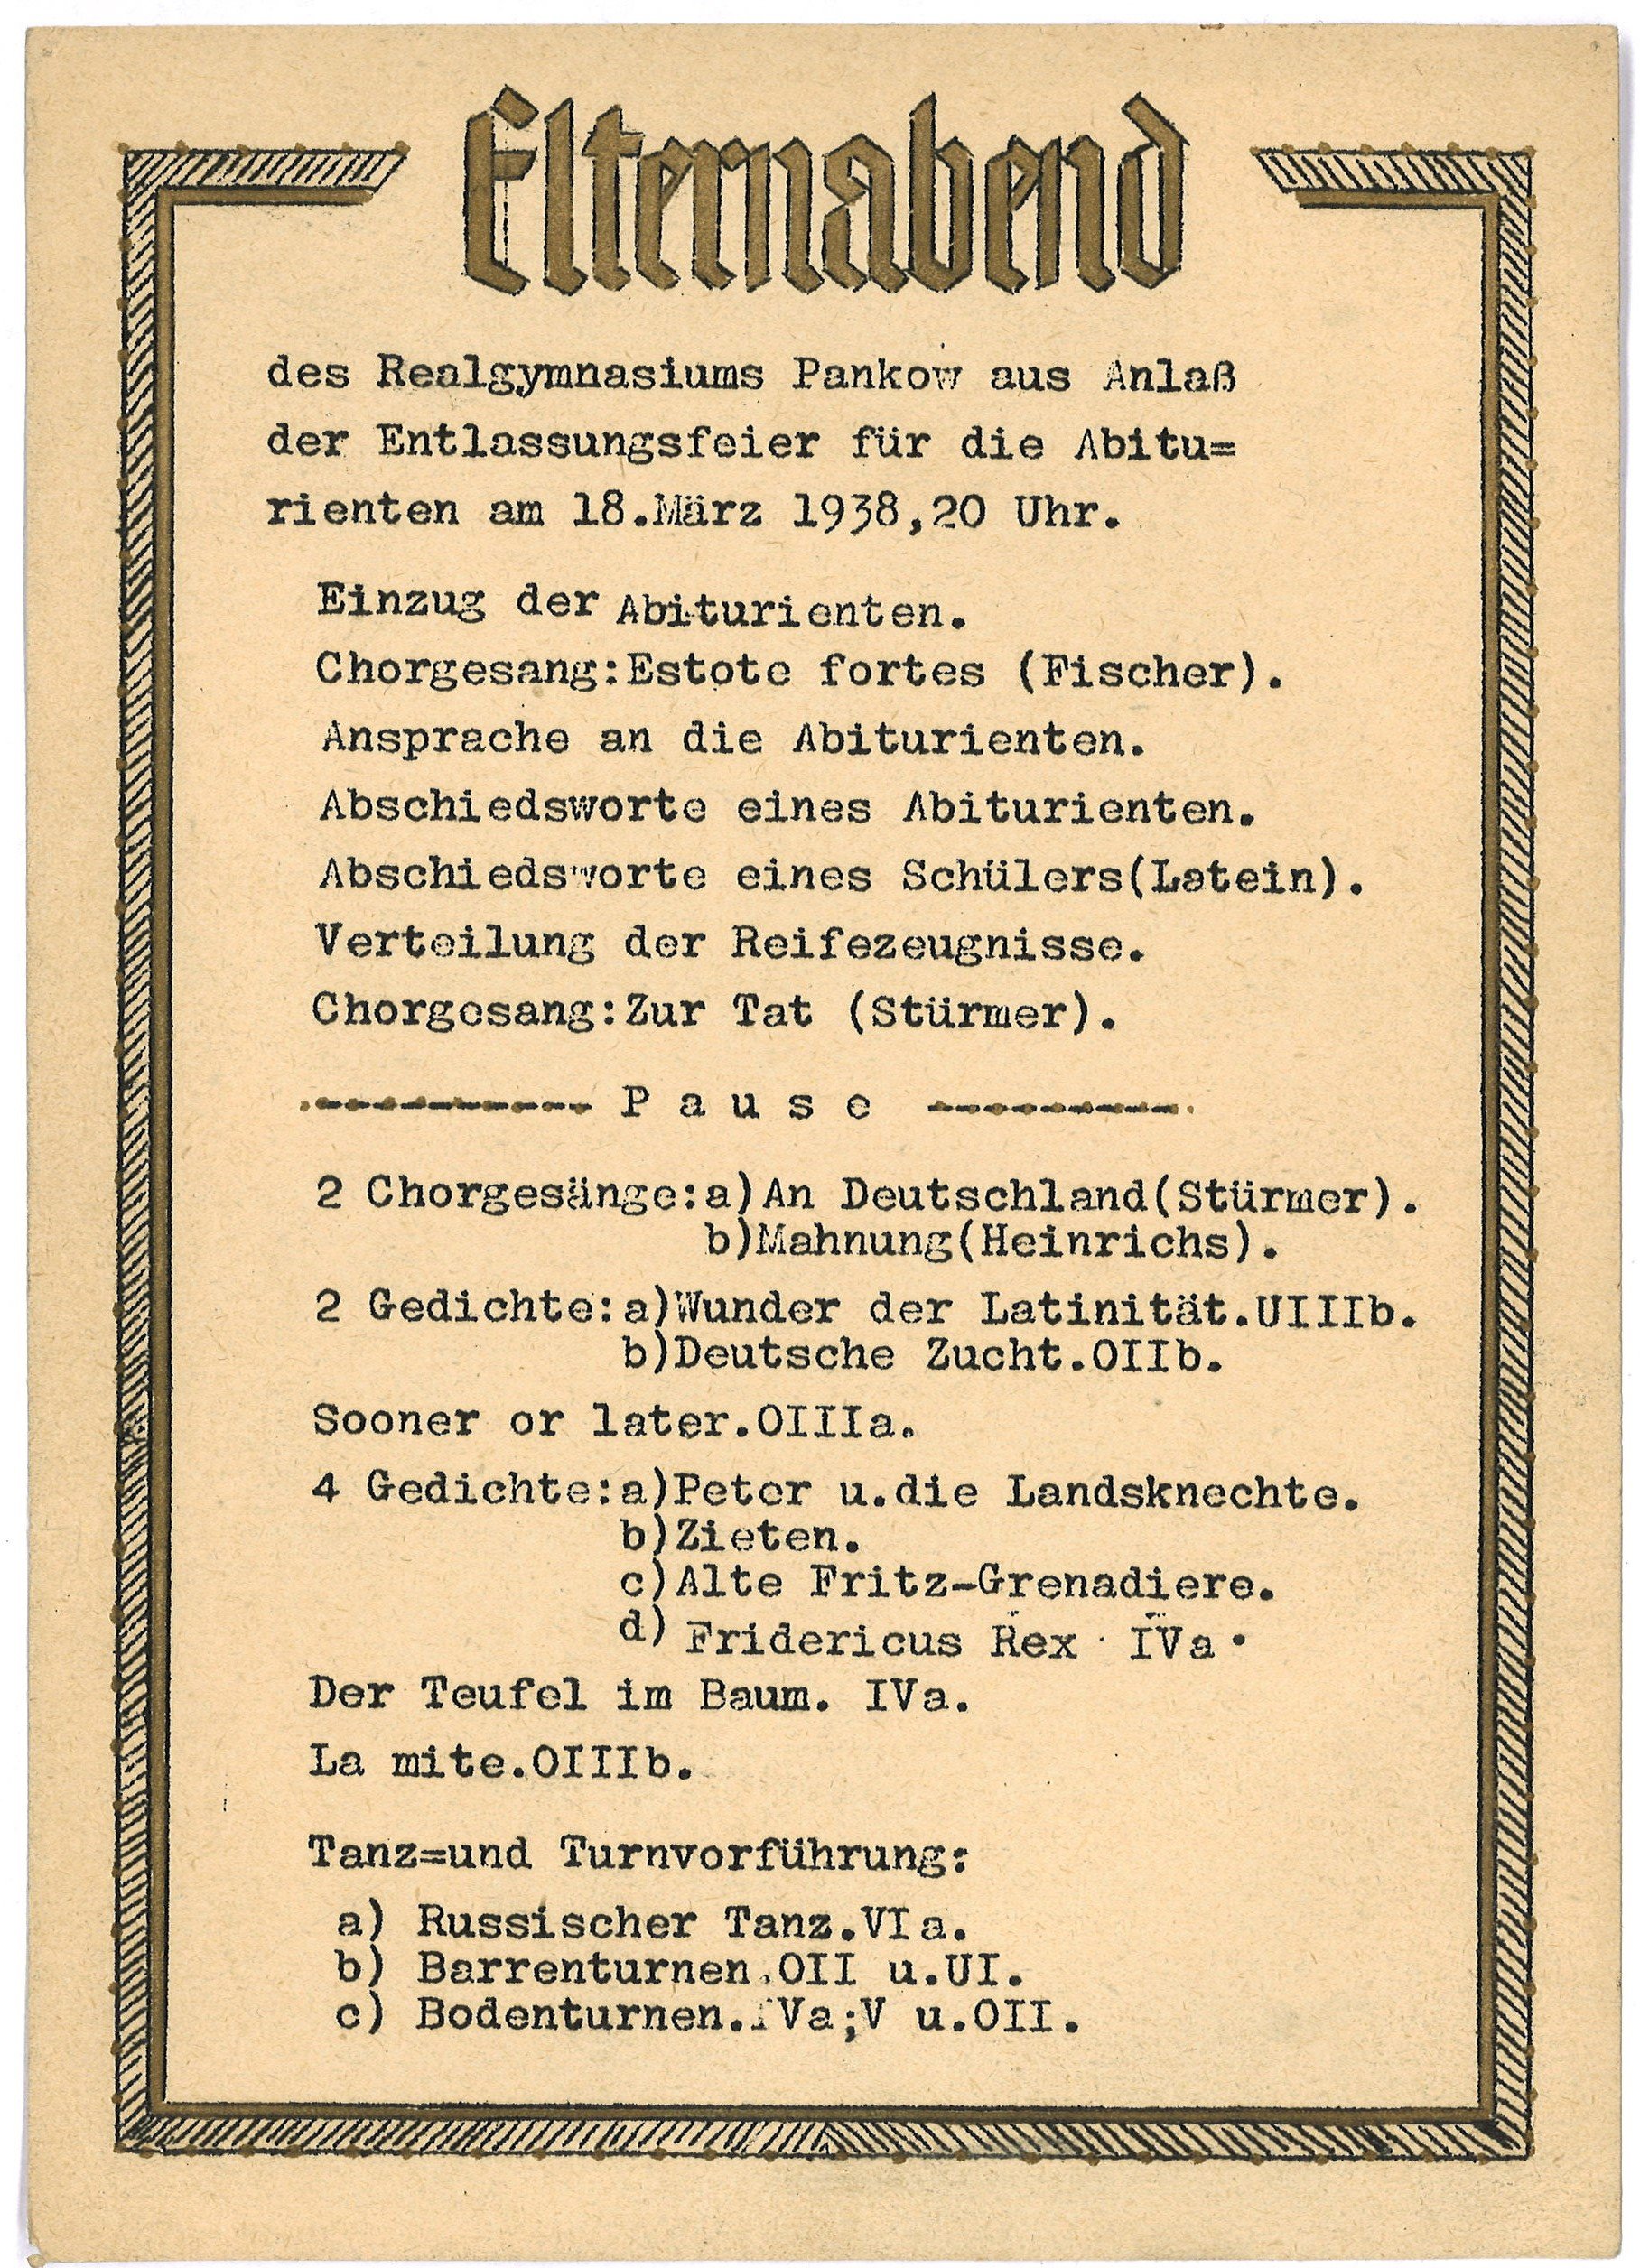 Programm zur Entlassungsfeier für die Abiturienten des Realgymnasiums Pankow 1938 (Landesgeschichtliche Vereinigung für die Mark Brandenburg e.V., Archiv CC BY)